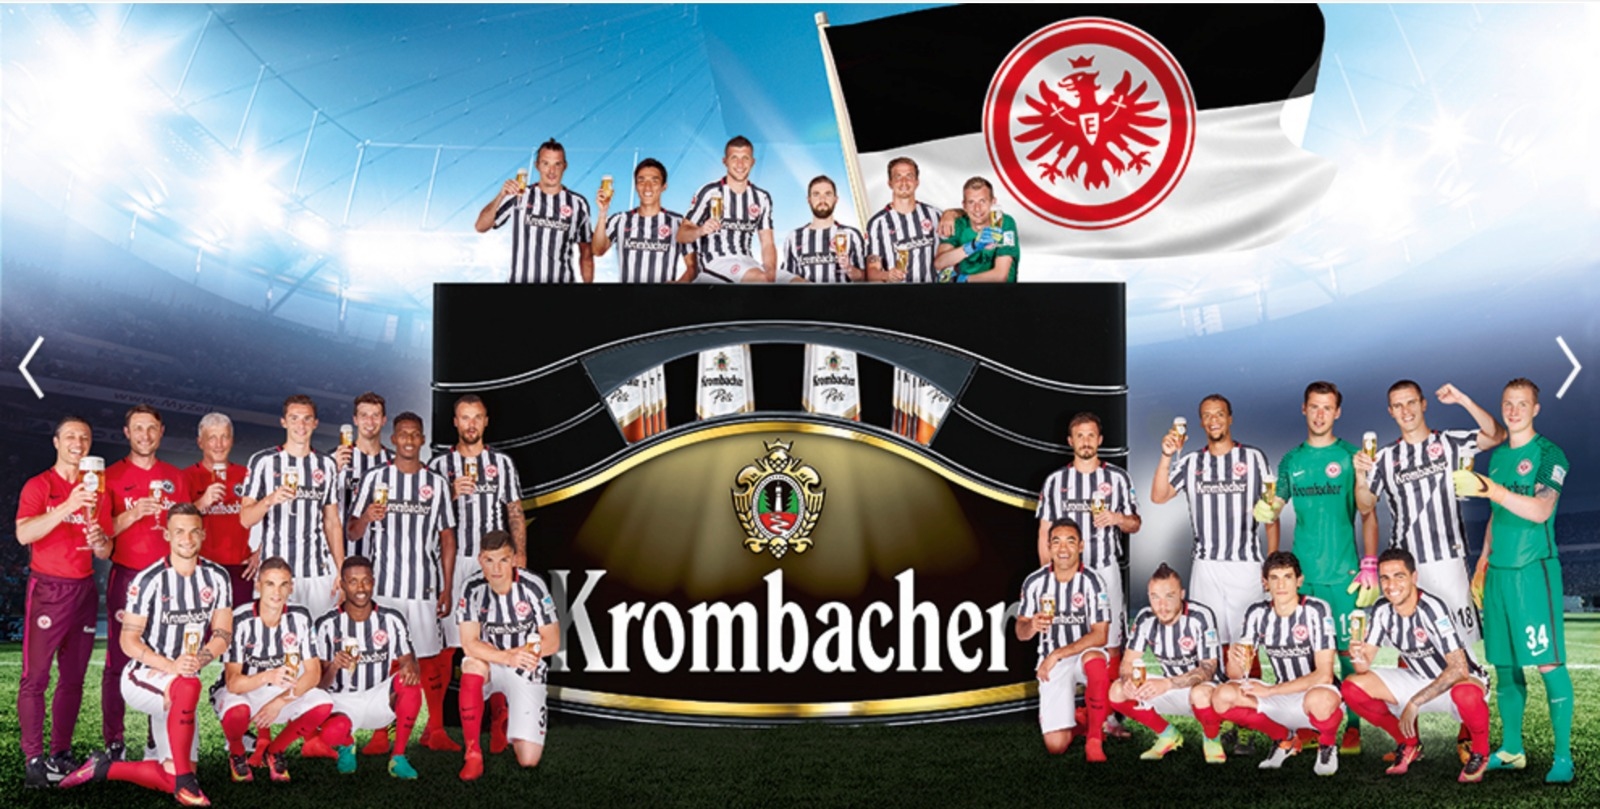 Световноизвестната бира Кrombacher която има 600 милиона евро годишен оборот